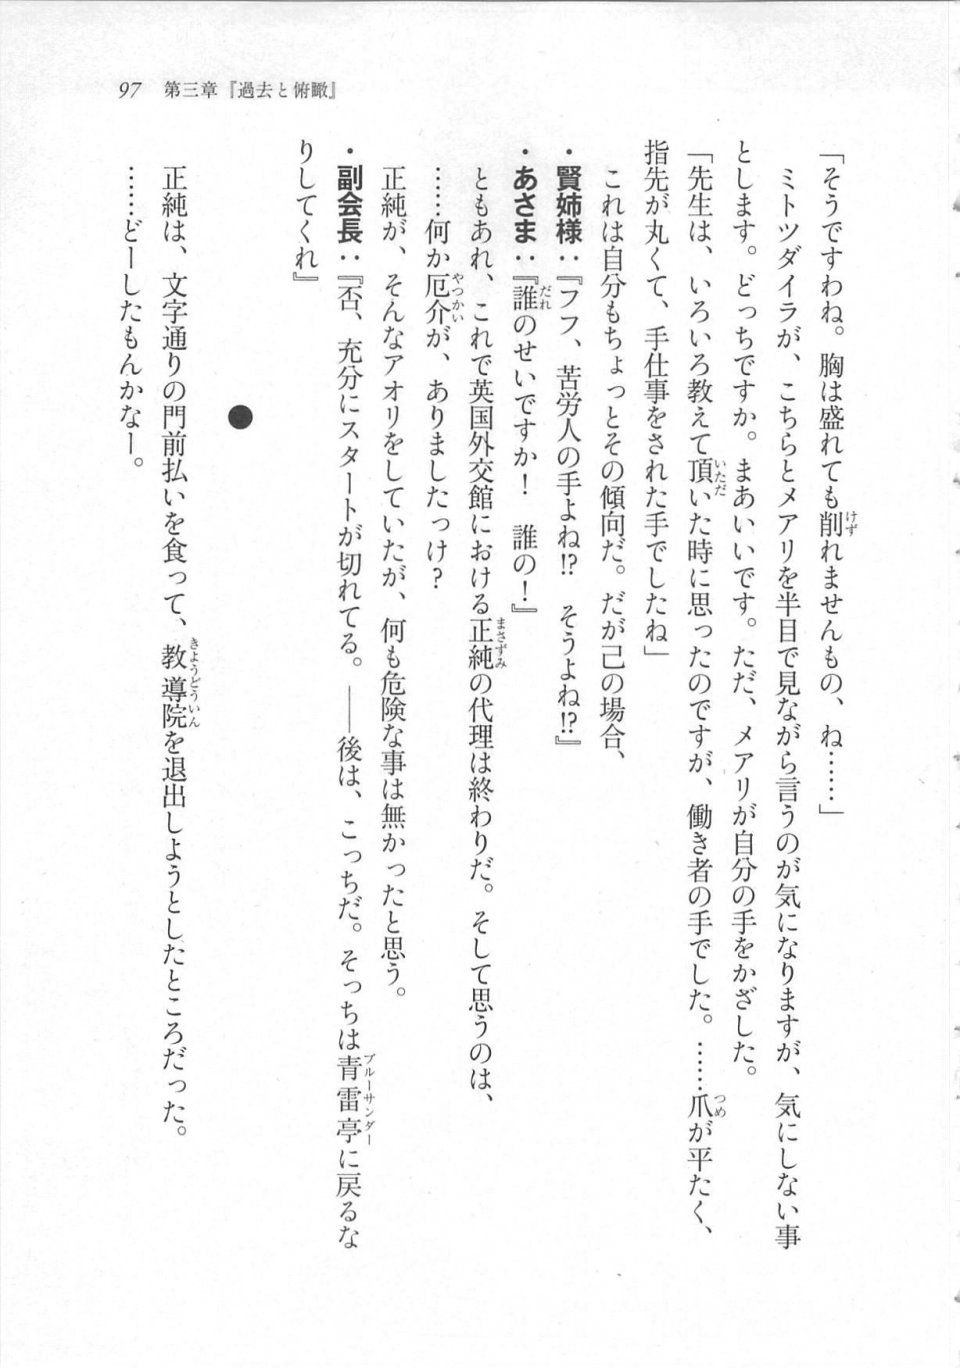 Kyoukai Senjou no Horizon LN Sidestory Vol 3 - Photo #101